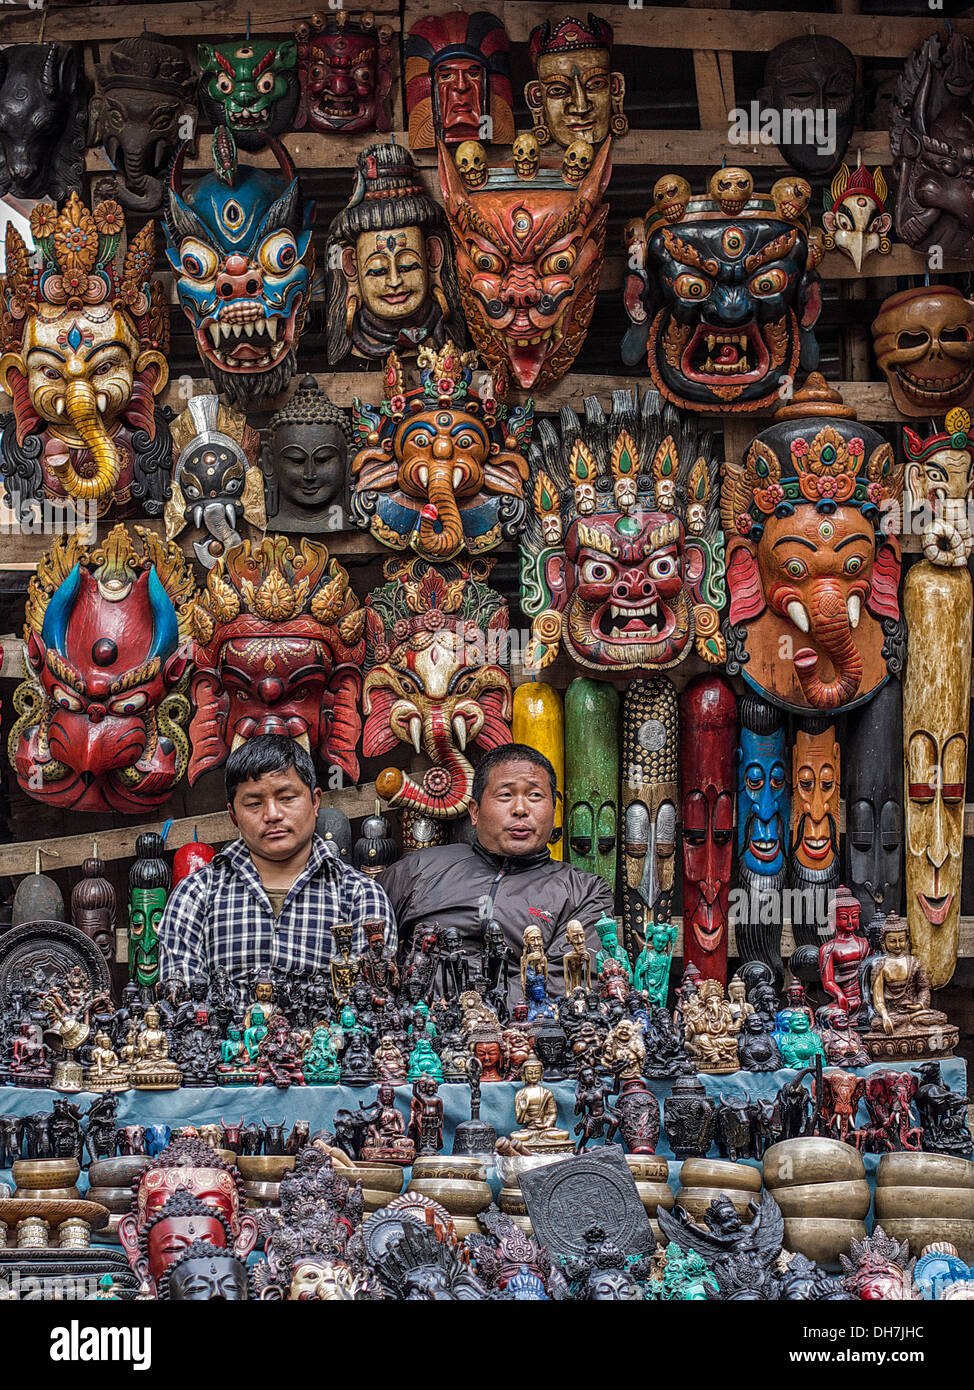 Commerçants assis à l'artisanat népalais traditionnel et une boutique de souvenirs dans le quartier de Thamel de Katmandou, Népal. Banque D'Images